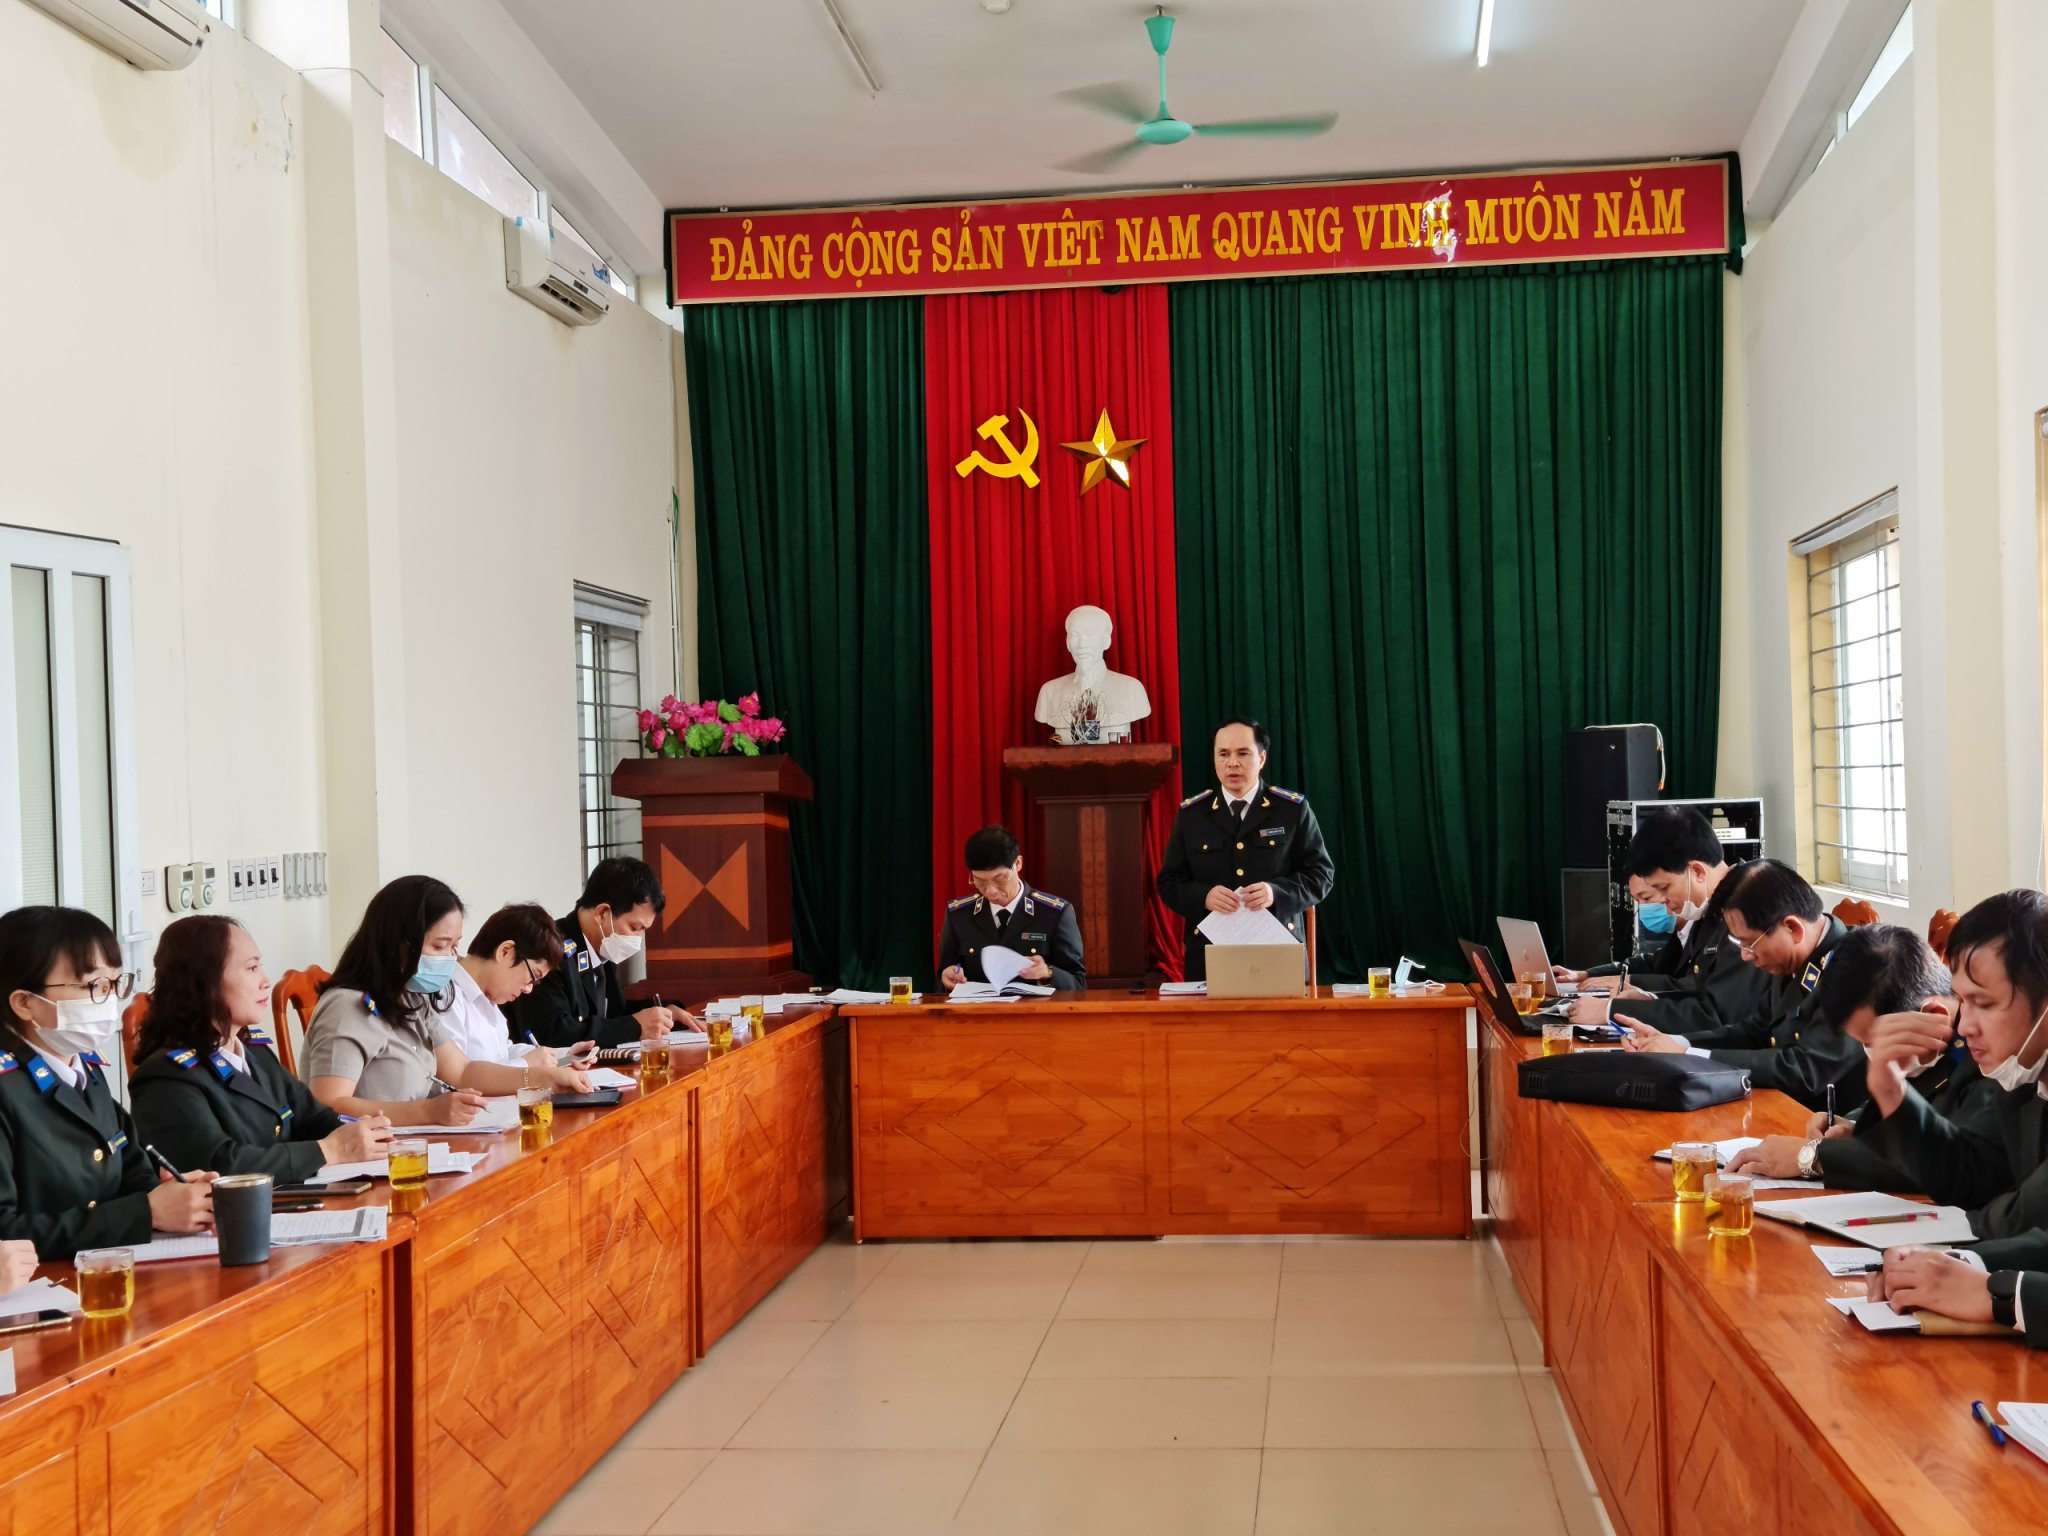 Cục Thi hành án dân sự tỉnh Nghệ An đẩy mạnh công tác đôn đốc, chỉ đạo việc thực hiện chỉ tiêu, nhiệm vụ ngay từ ngày đầu tháng đầu của năm công tác 2022.